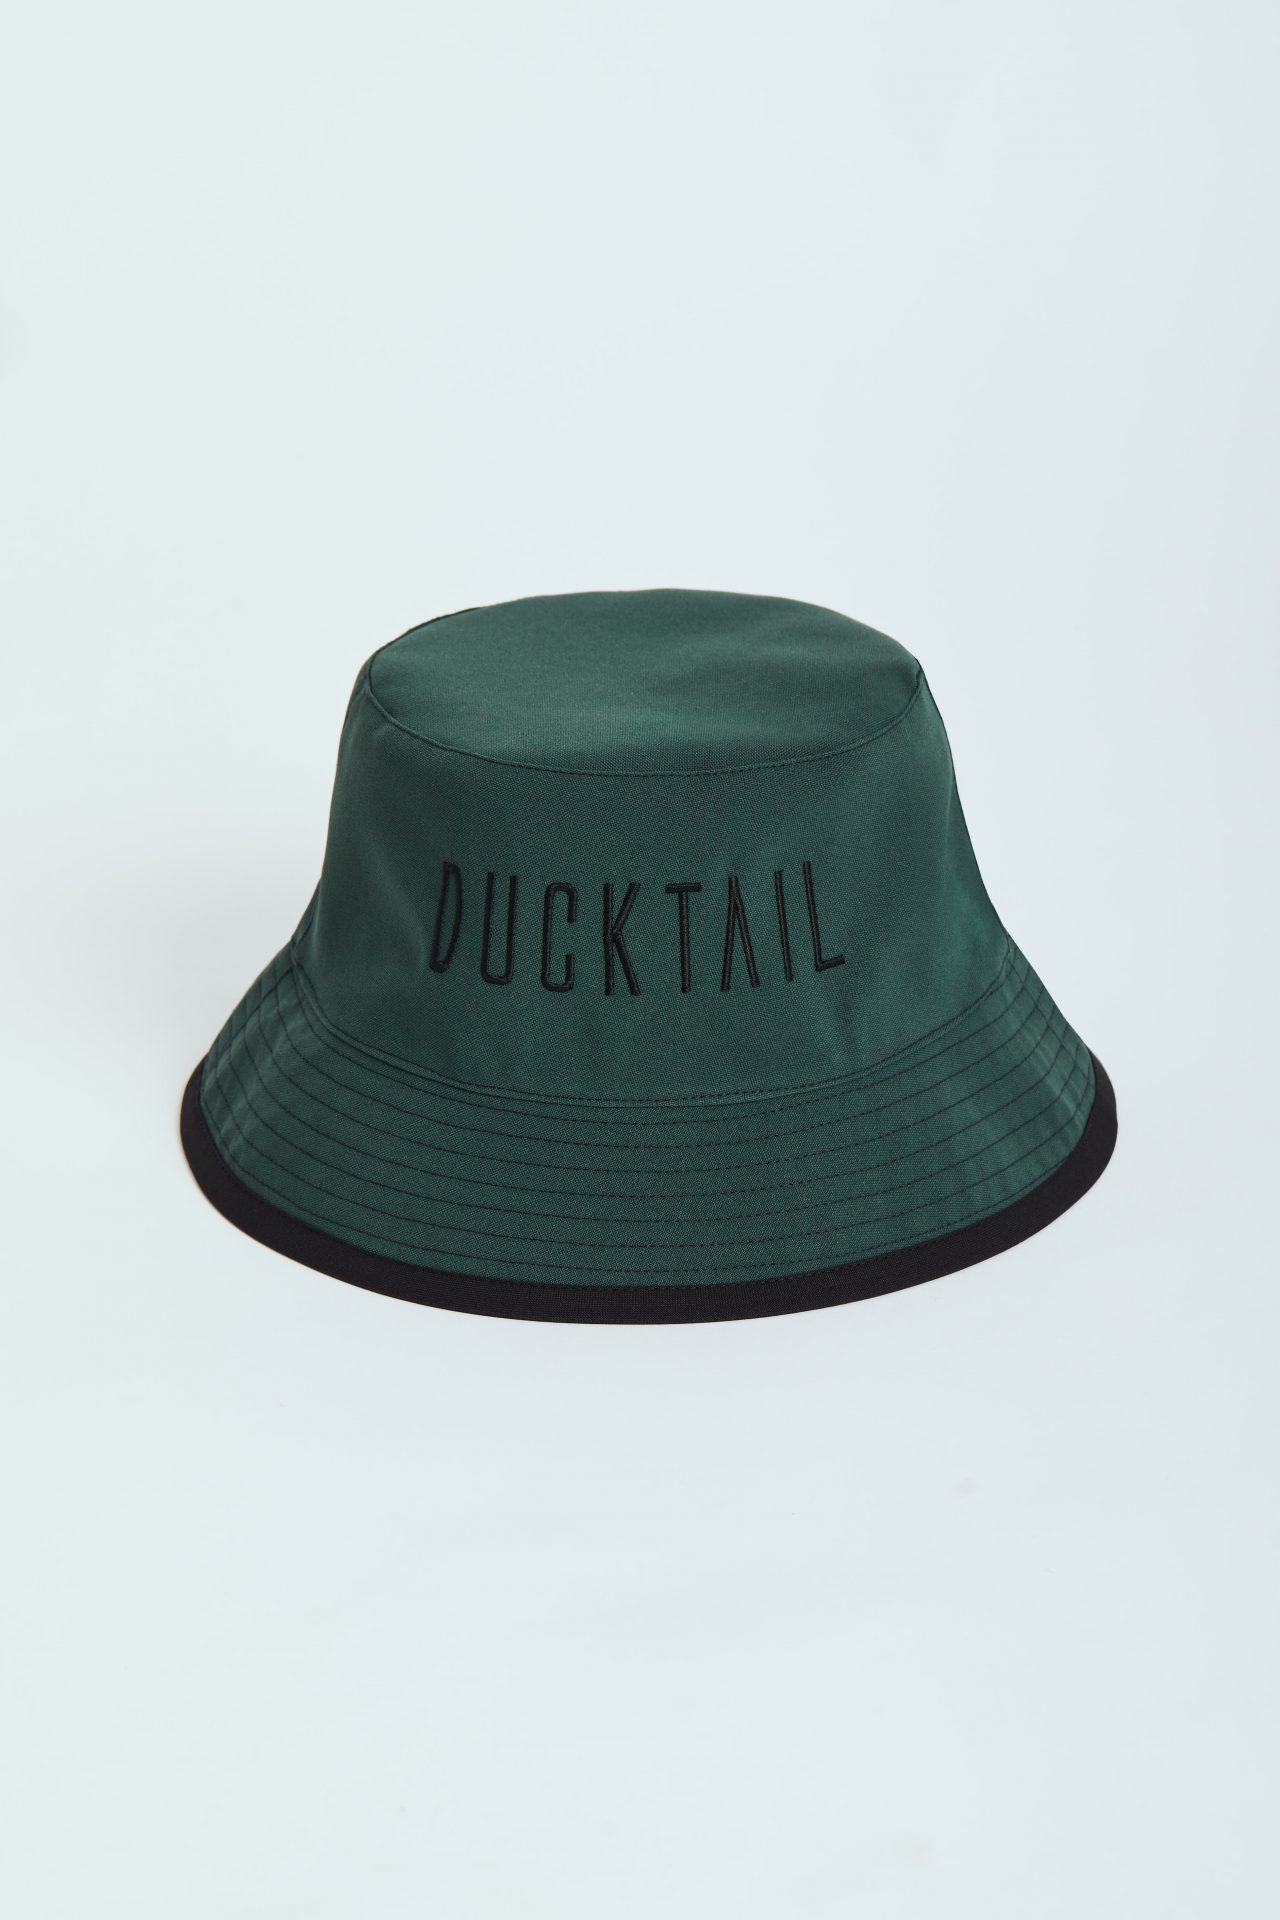 Ducktail - Rainwear FISCHERHUT